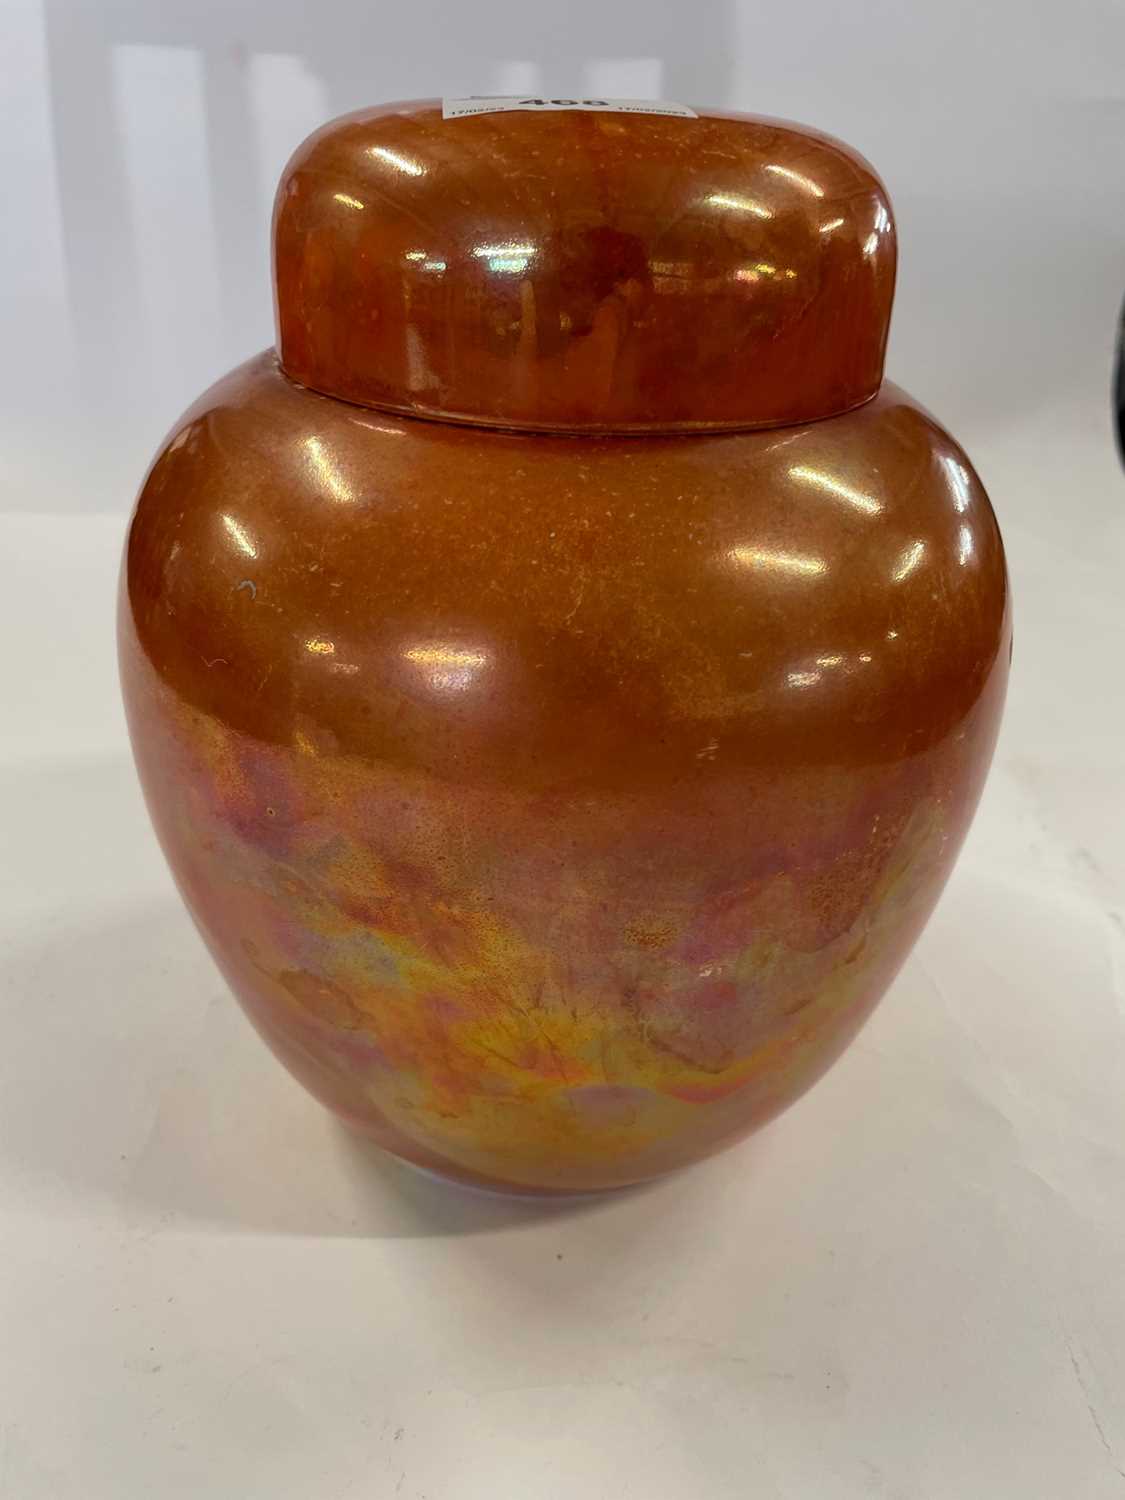 Ruskin orange lustre ginger jar, impressed marks to base - 20cm high